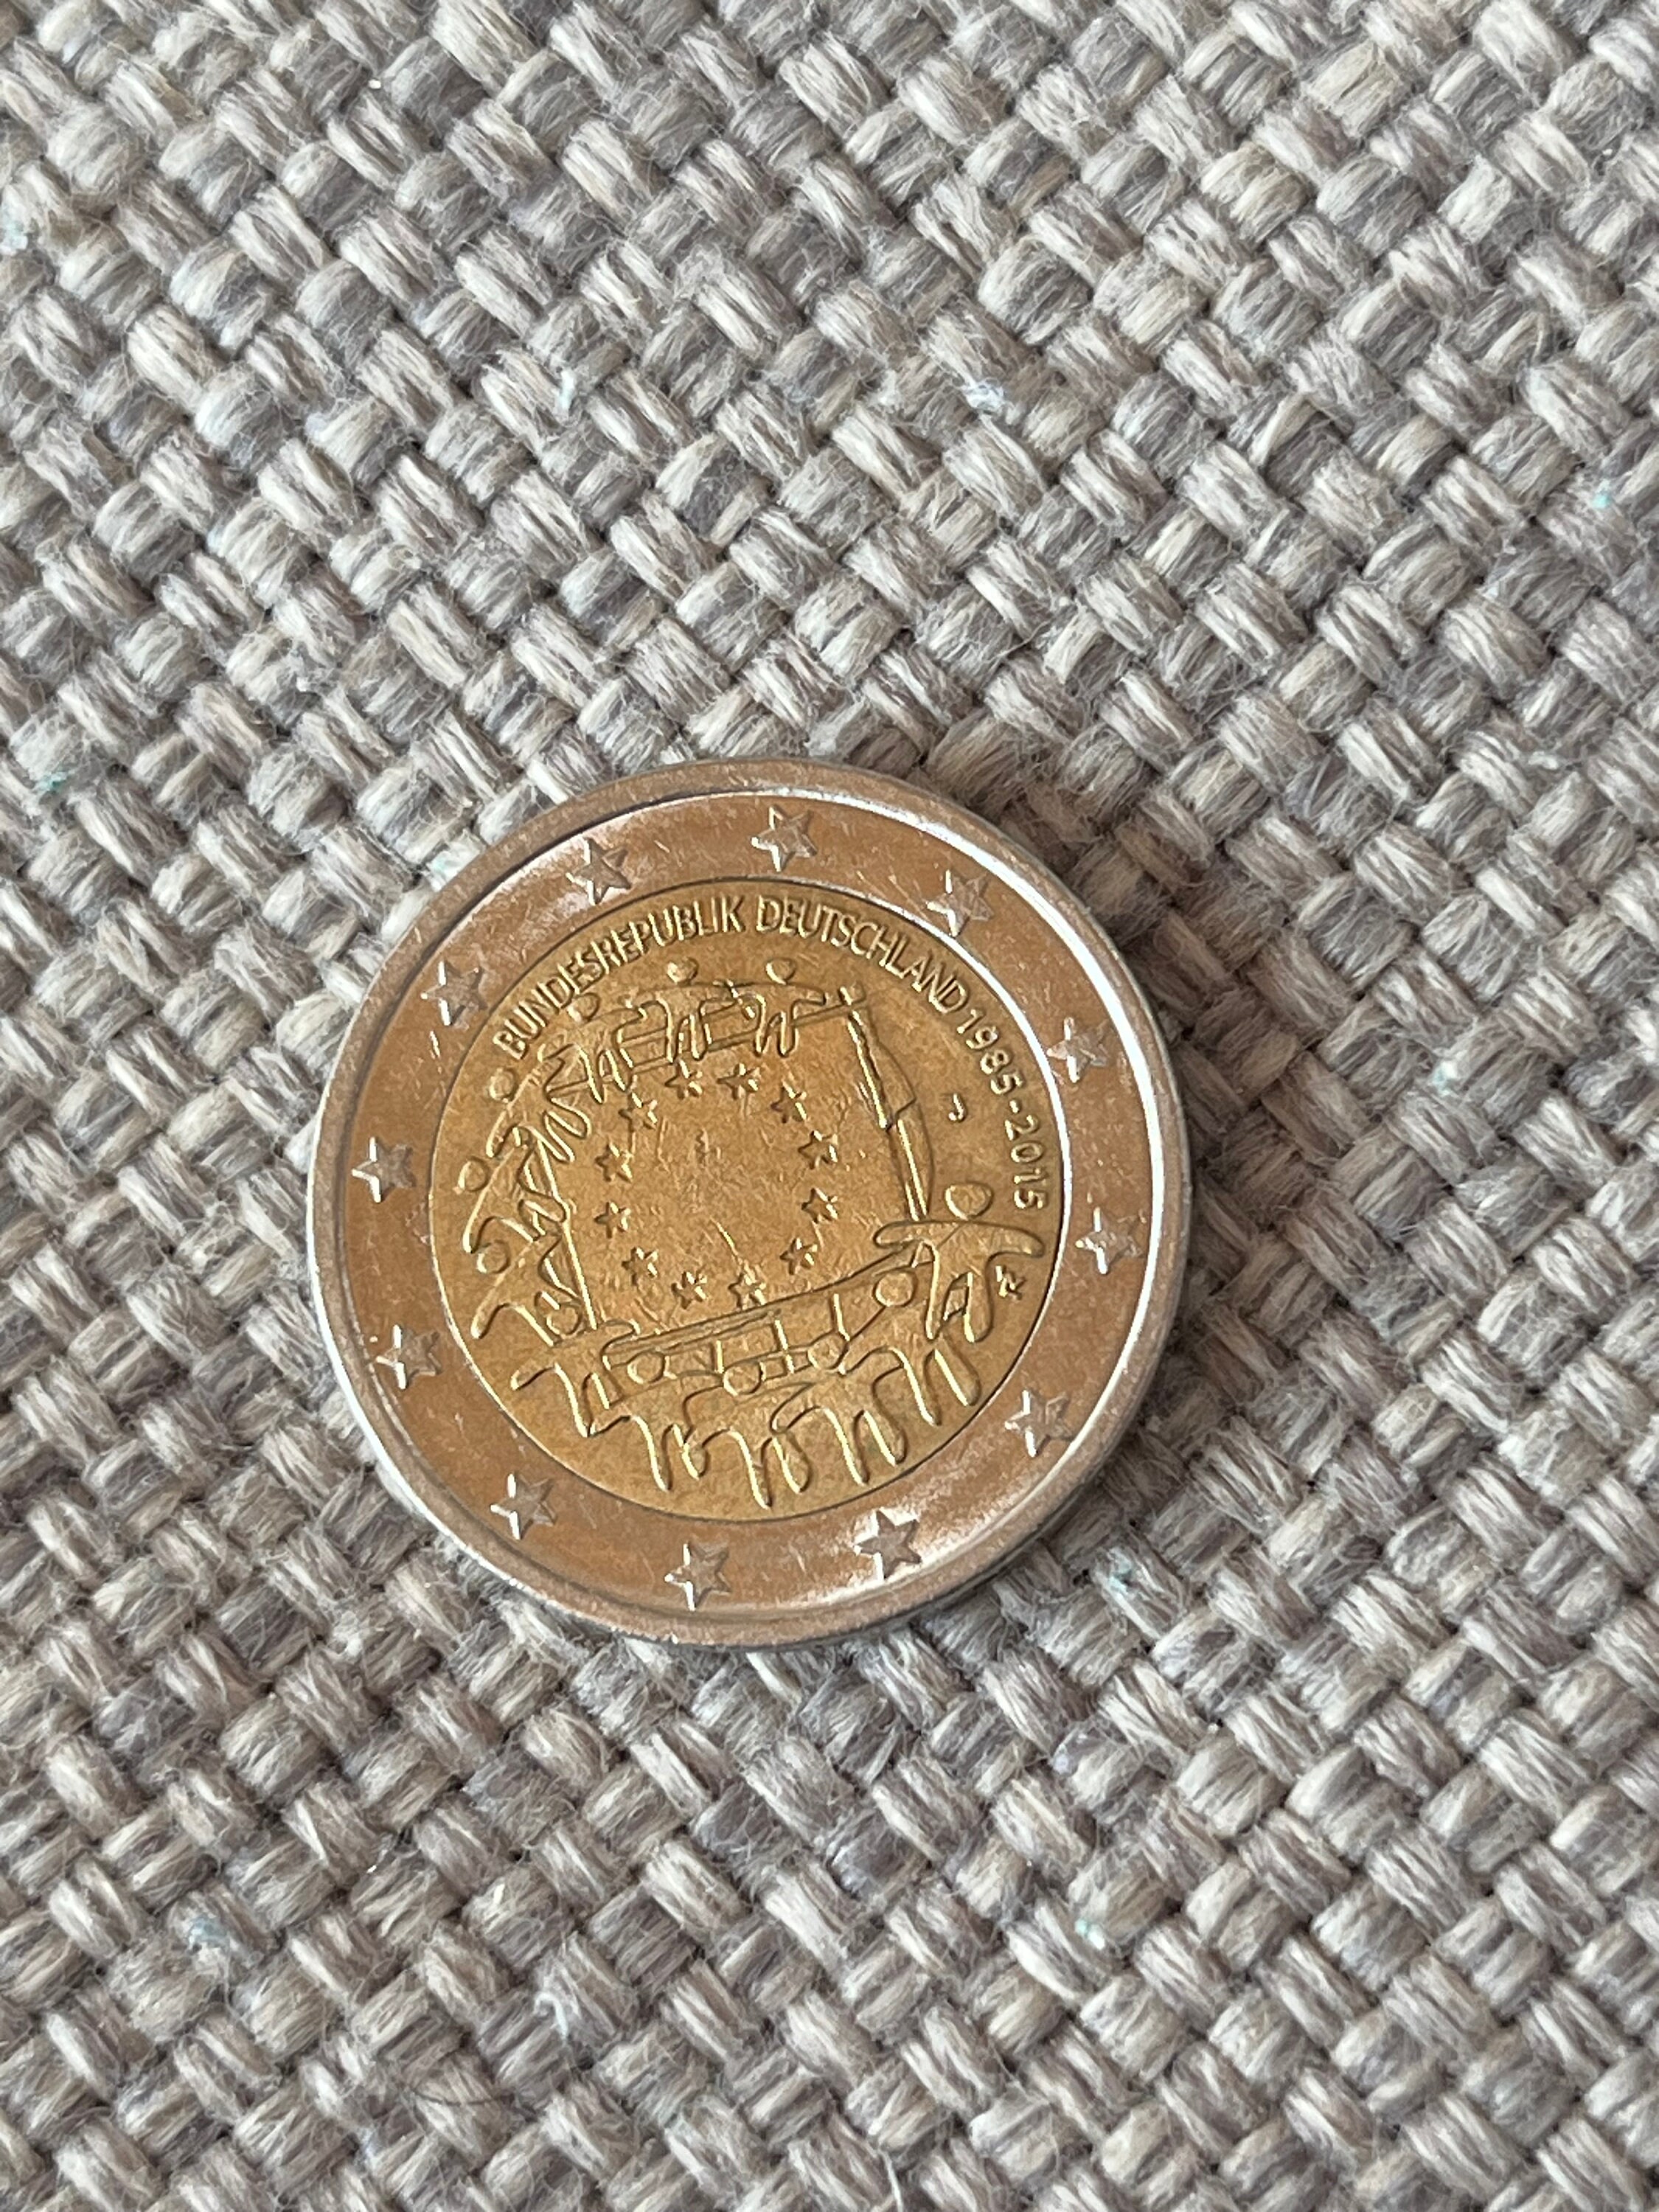 La pièce de 1 euro avec le hibou, une monnaie ordinaire moins